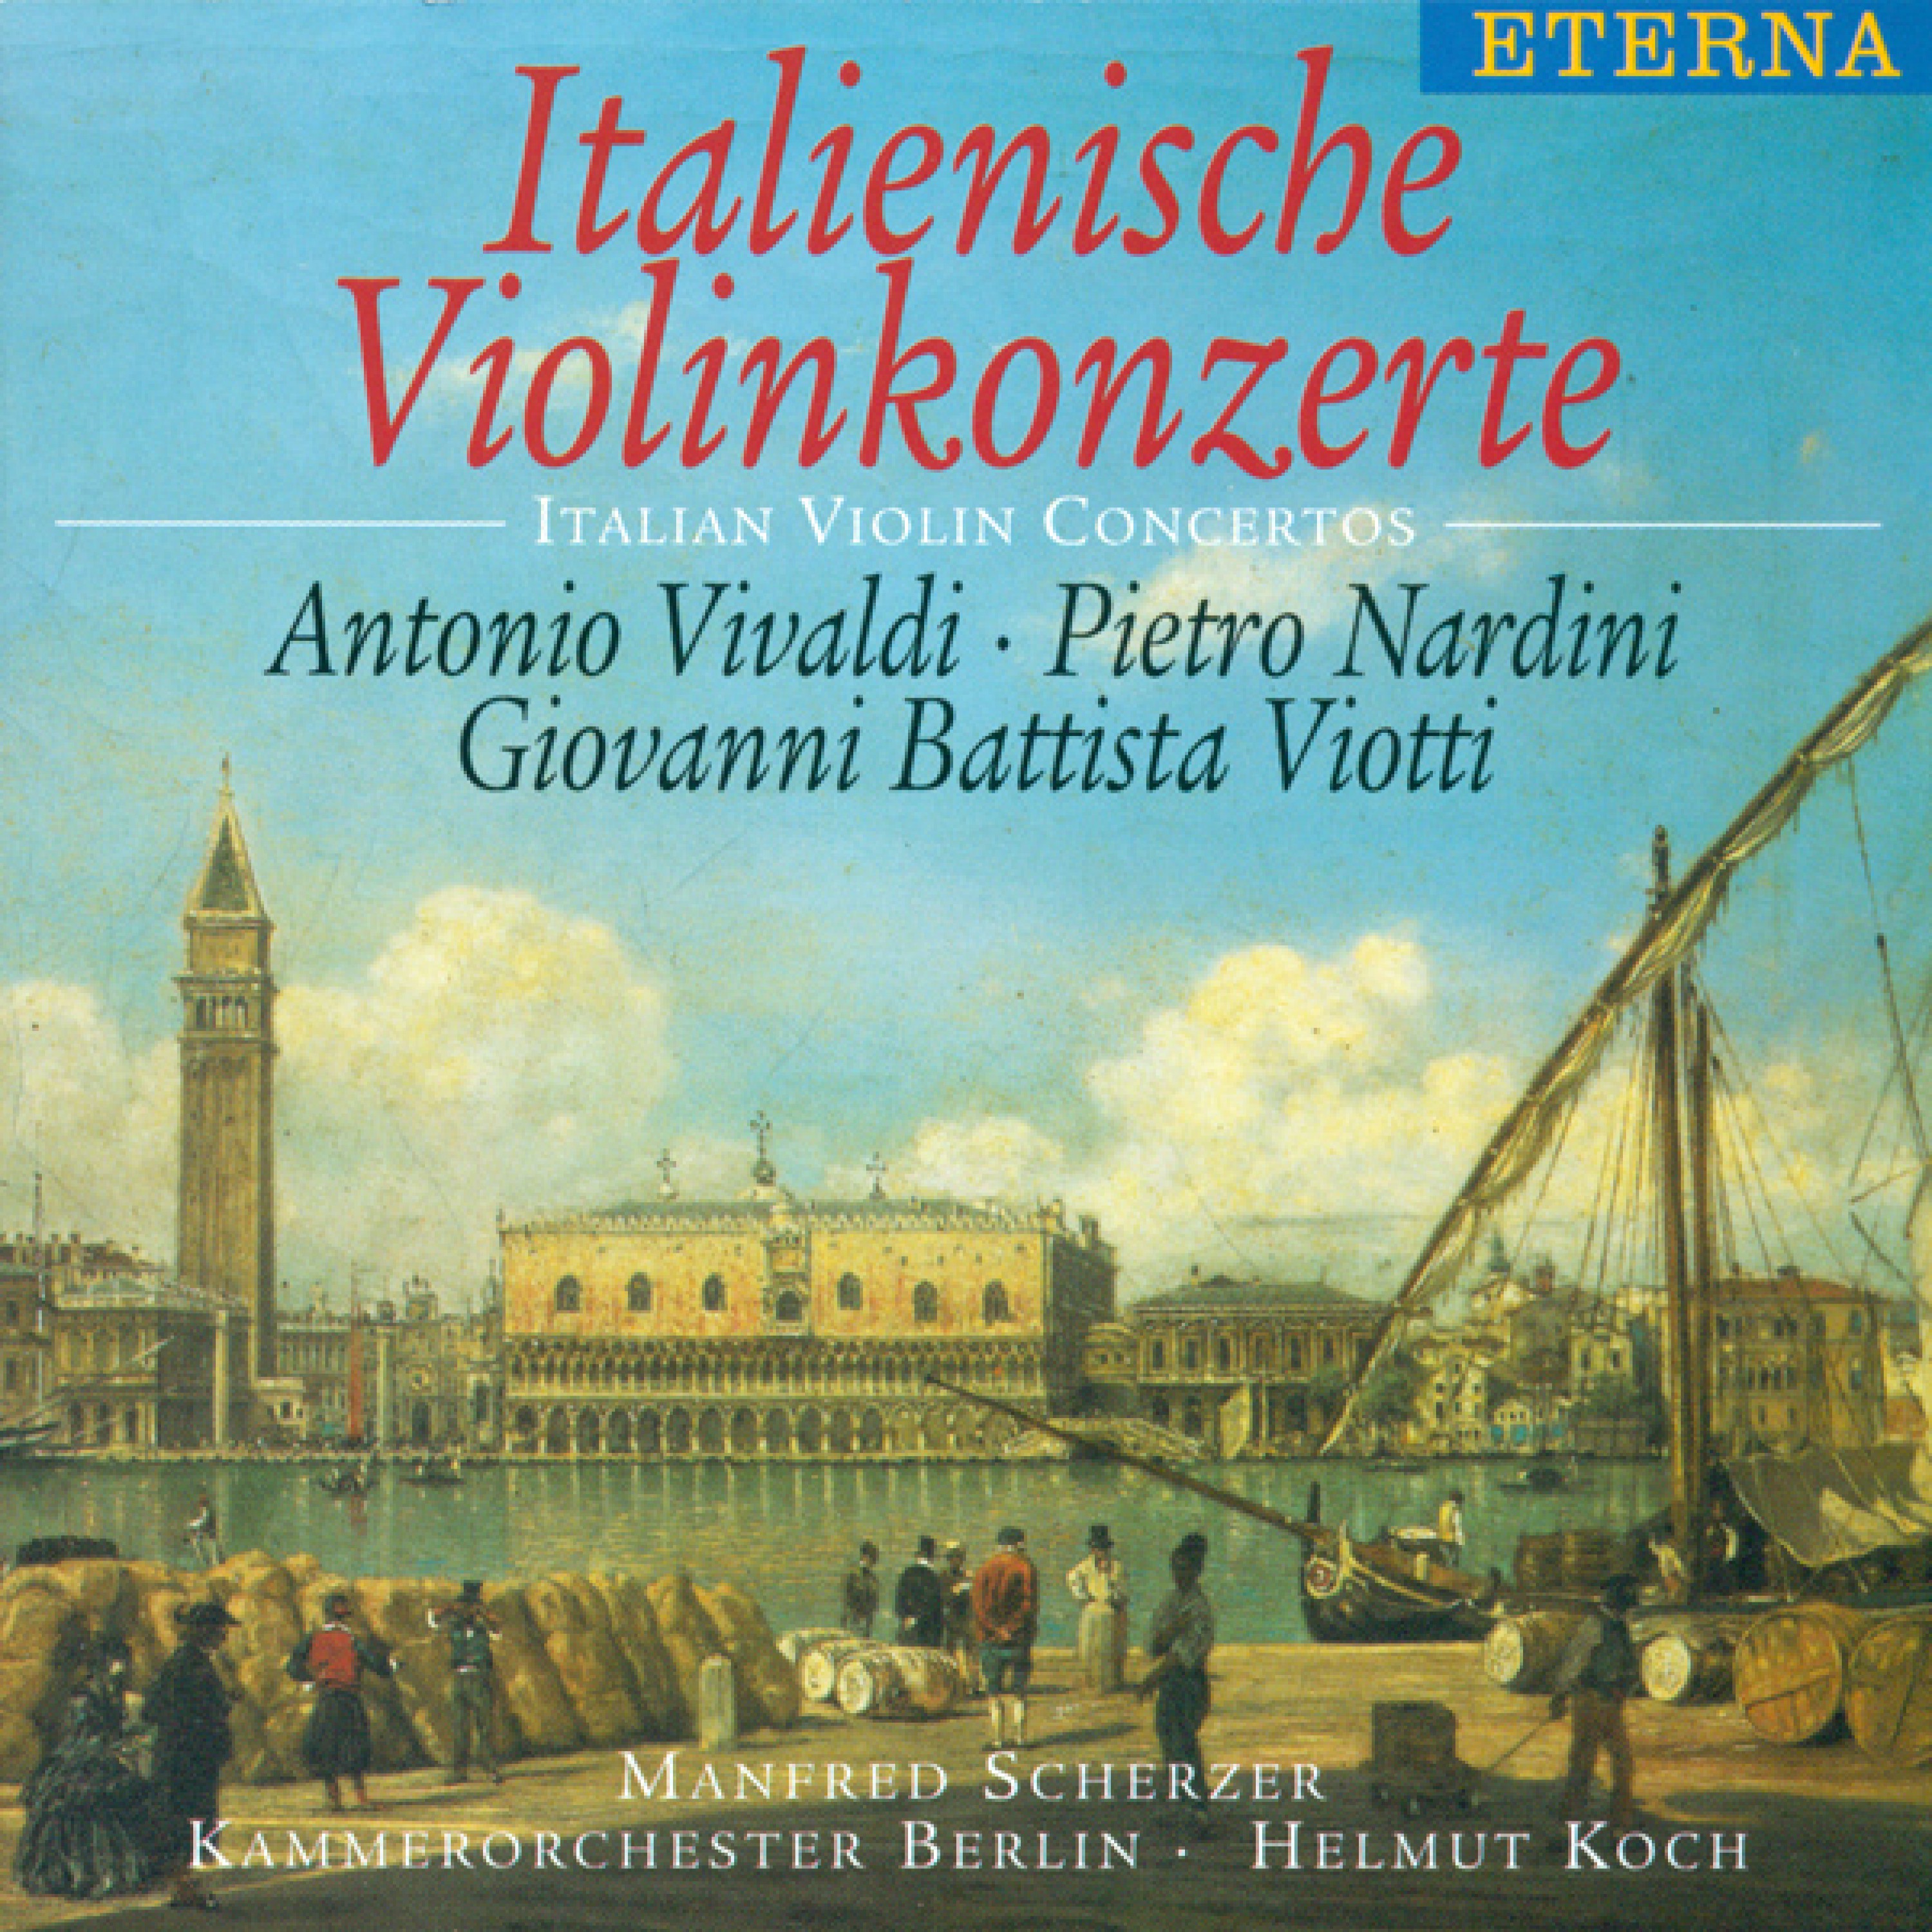 Violin Concerto No. 22 in A Minor, G. 97: I. Moderato